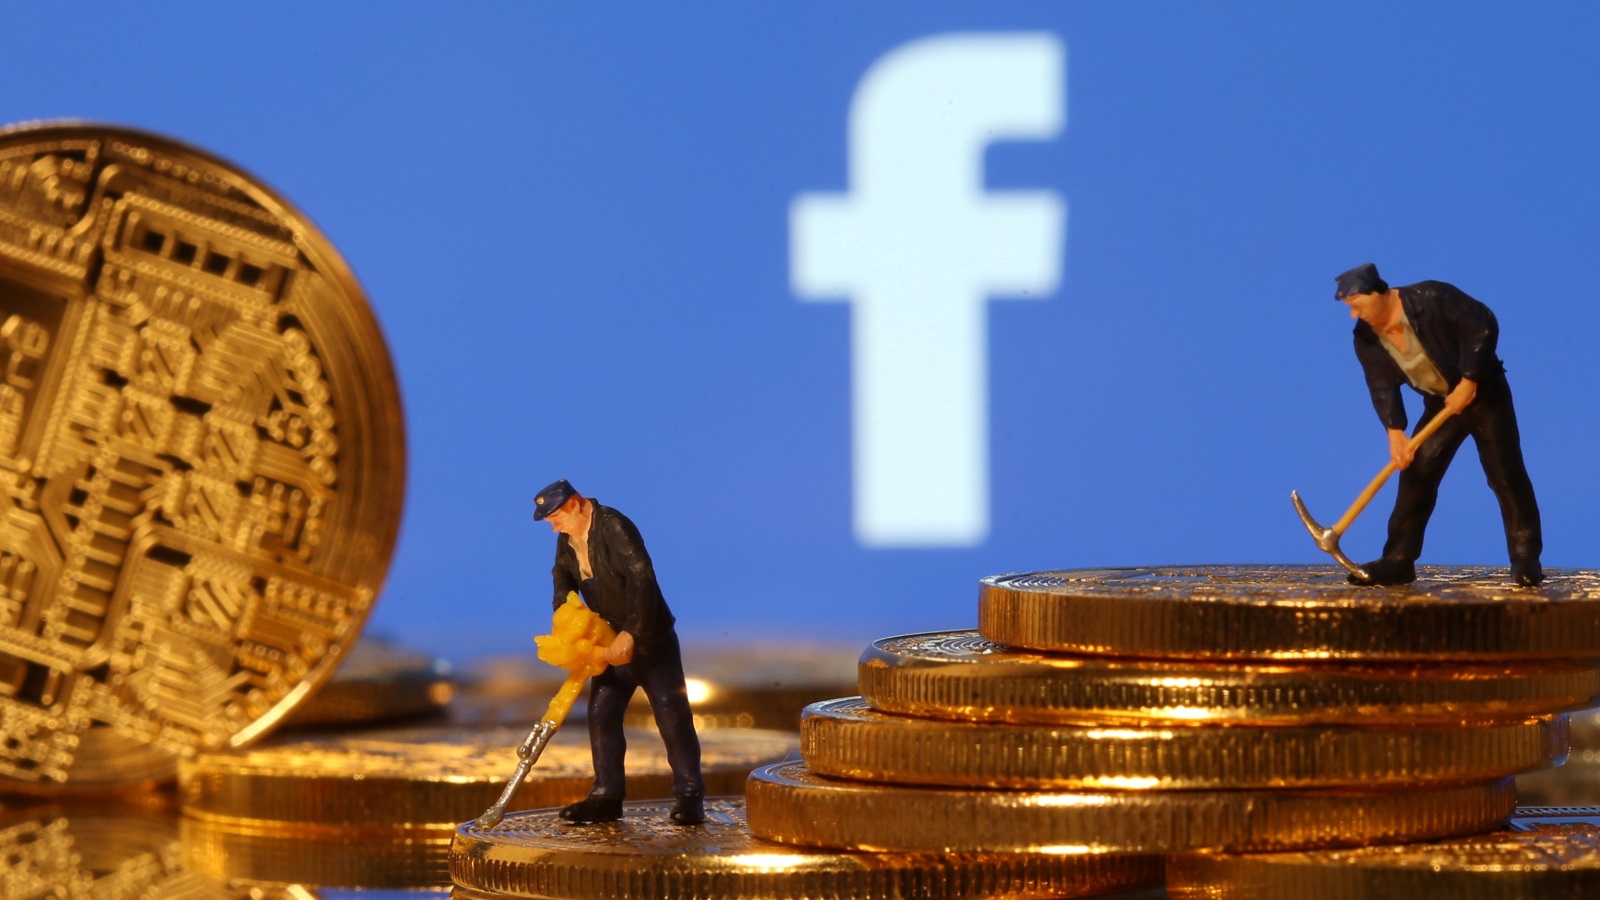  ليبرا أُعلنت في إطار مساعي فيسبوك لدخول مجال التجارة الإلكترونية (رويترز)